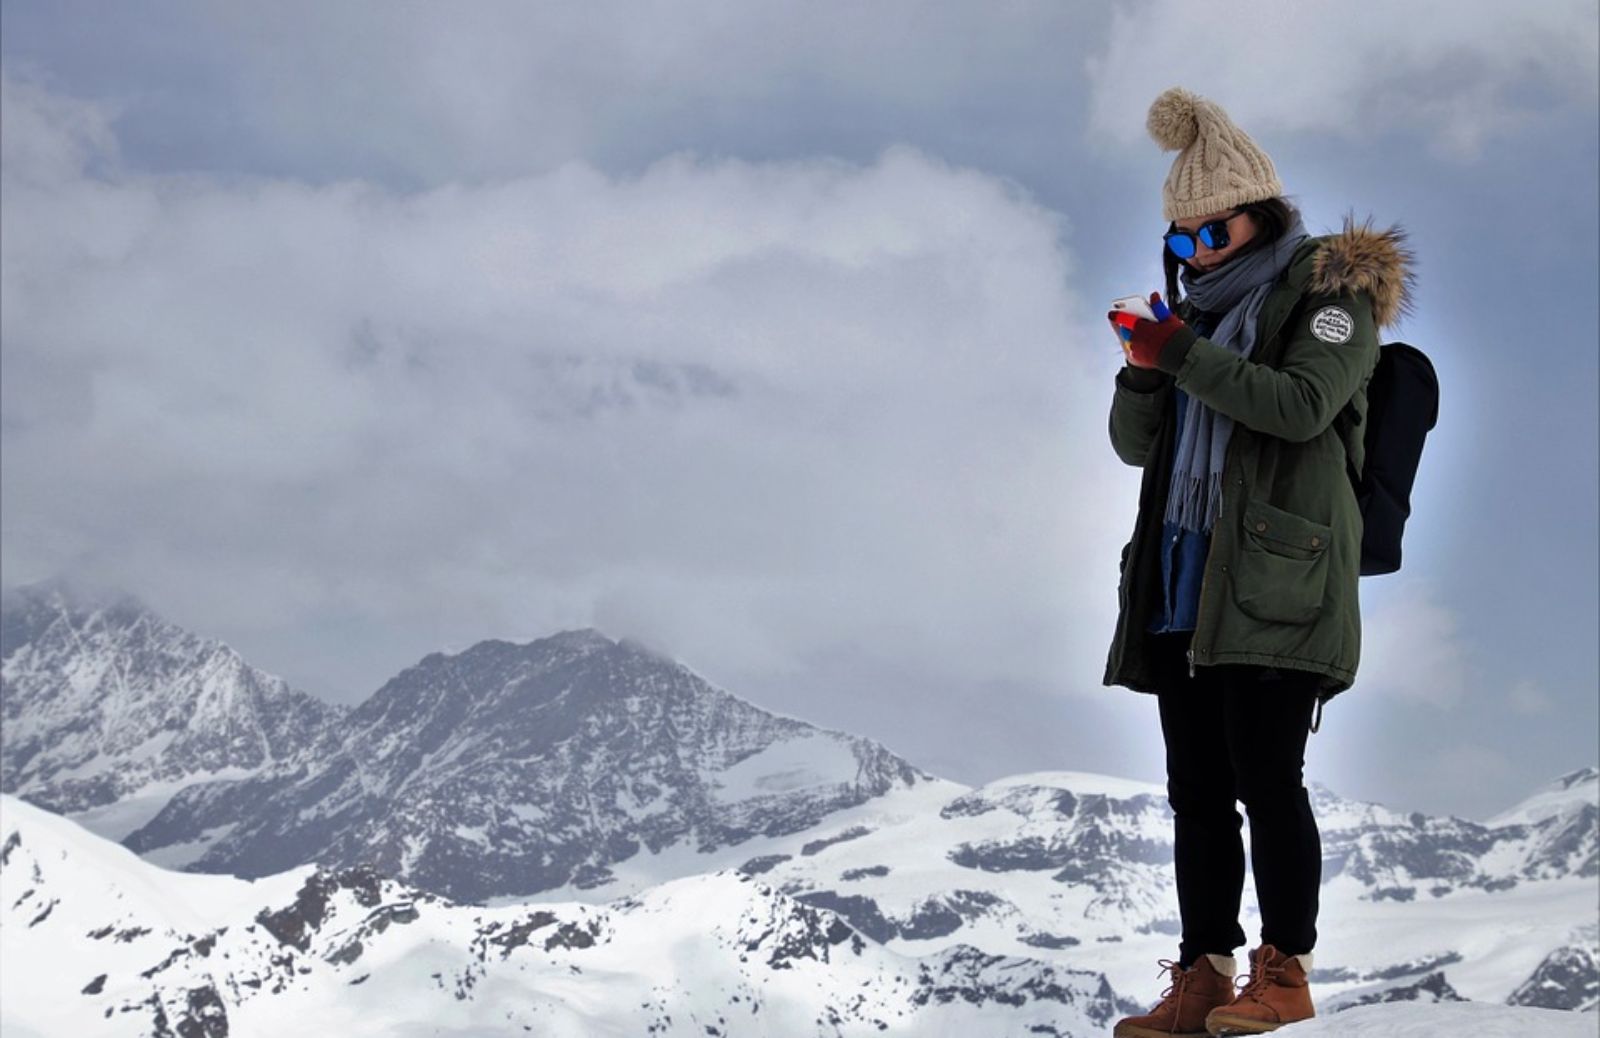 Settimana bianca: 5 idee per la tua vacanza sulla neve 